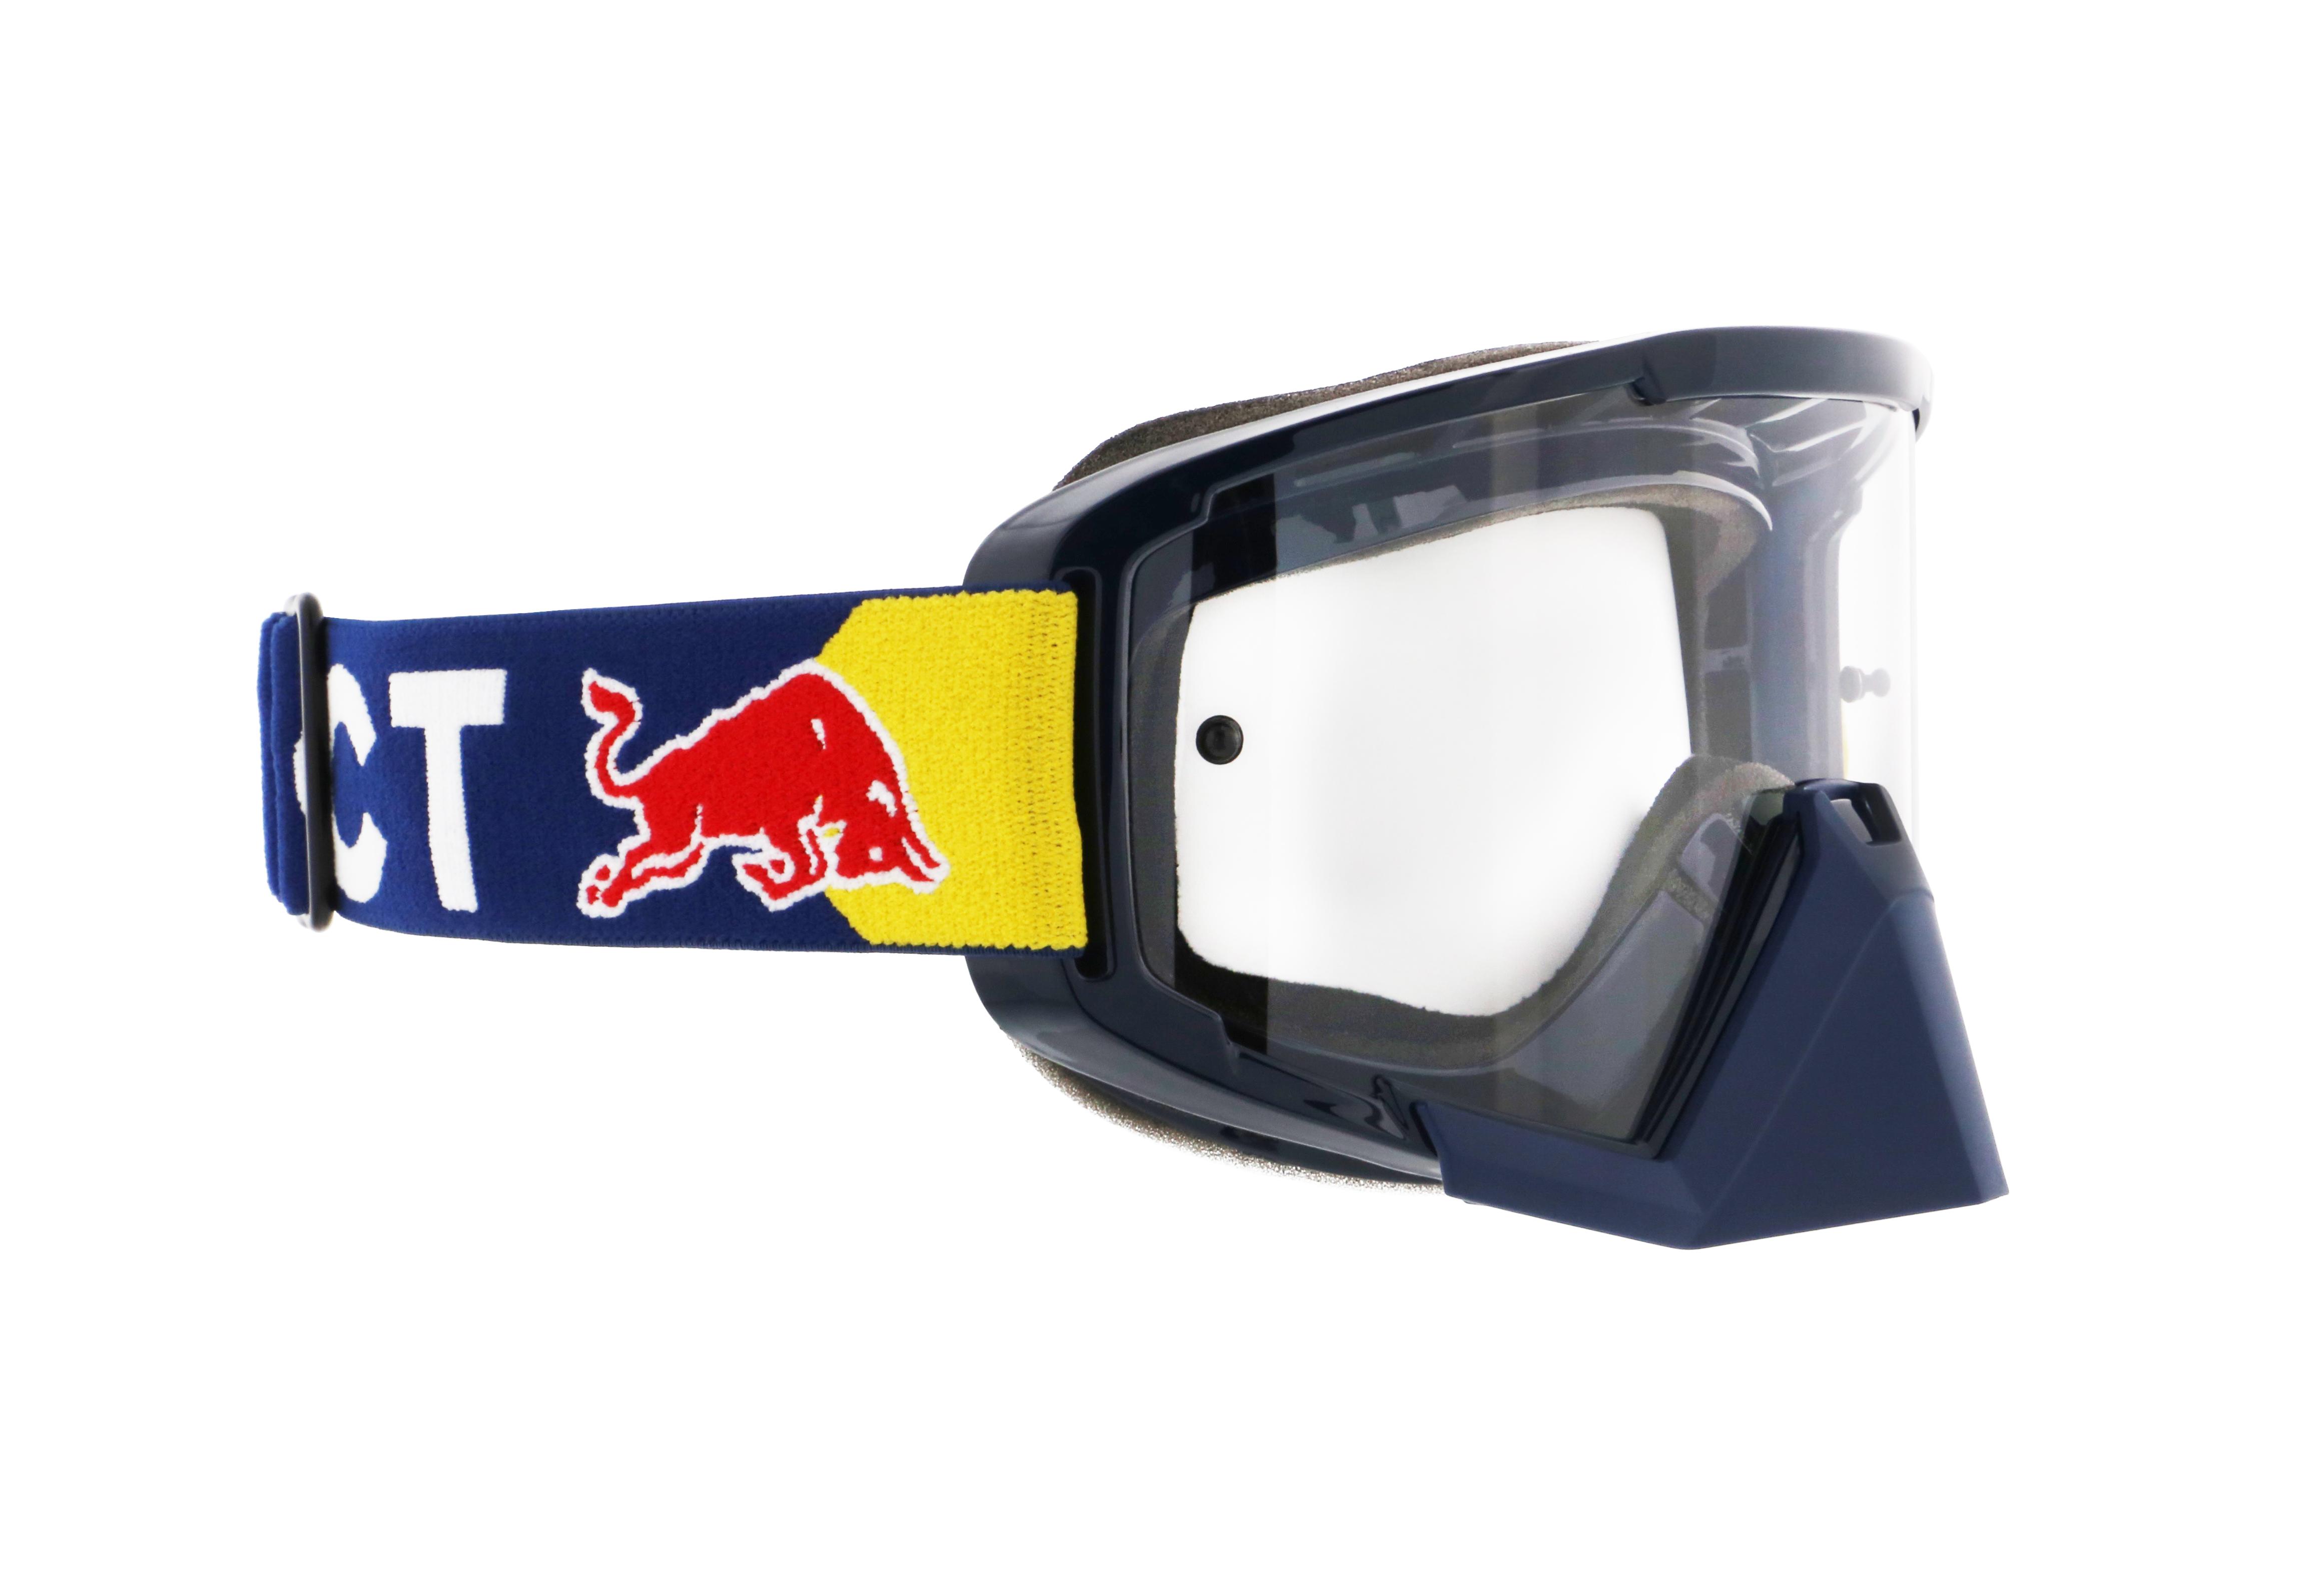 RedBull Spect Masque Motocross et VTT WHIP 002 Black Clear Flash - WHIP 002  - Ski Goggles - IceOptic